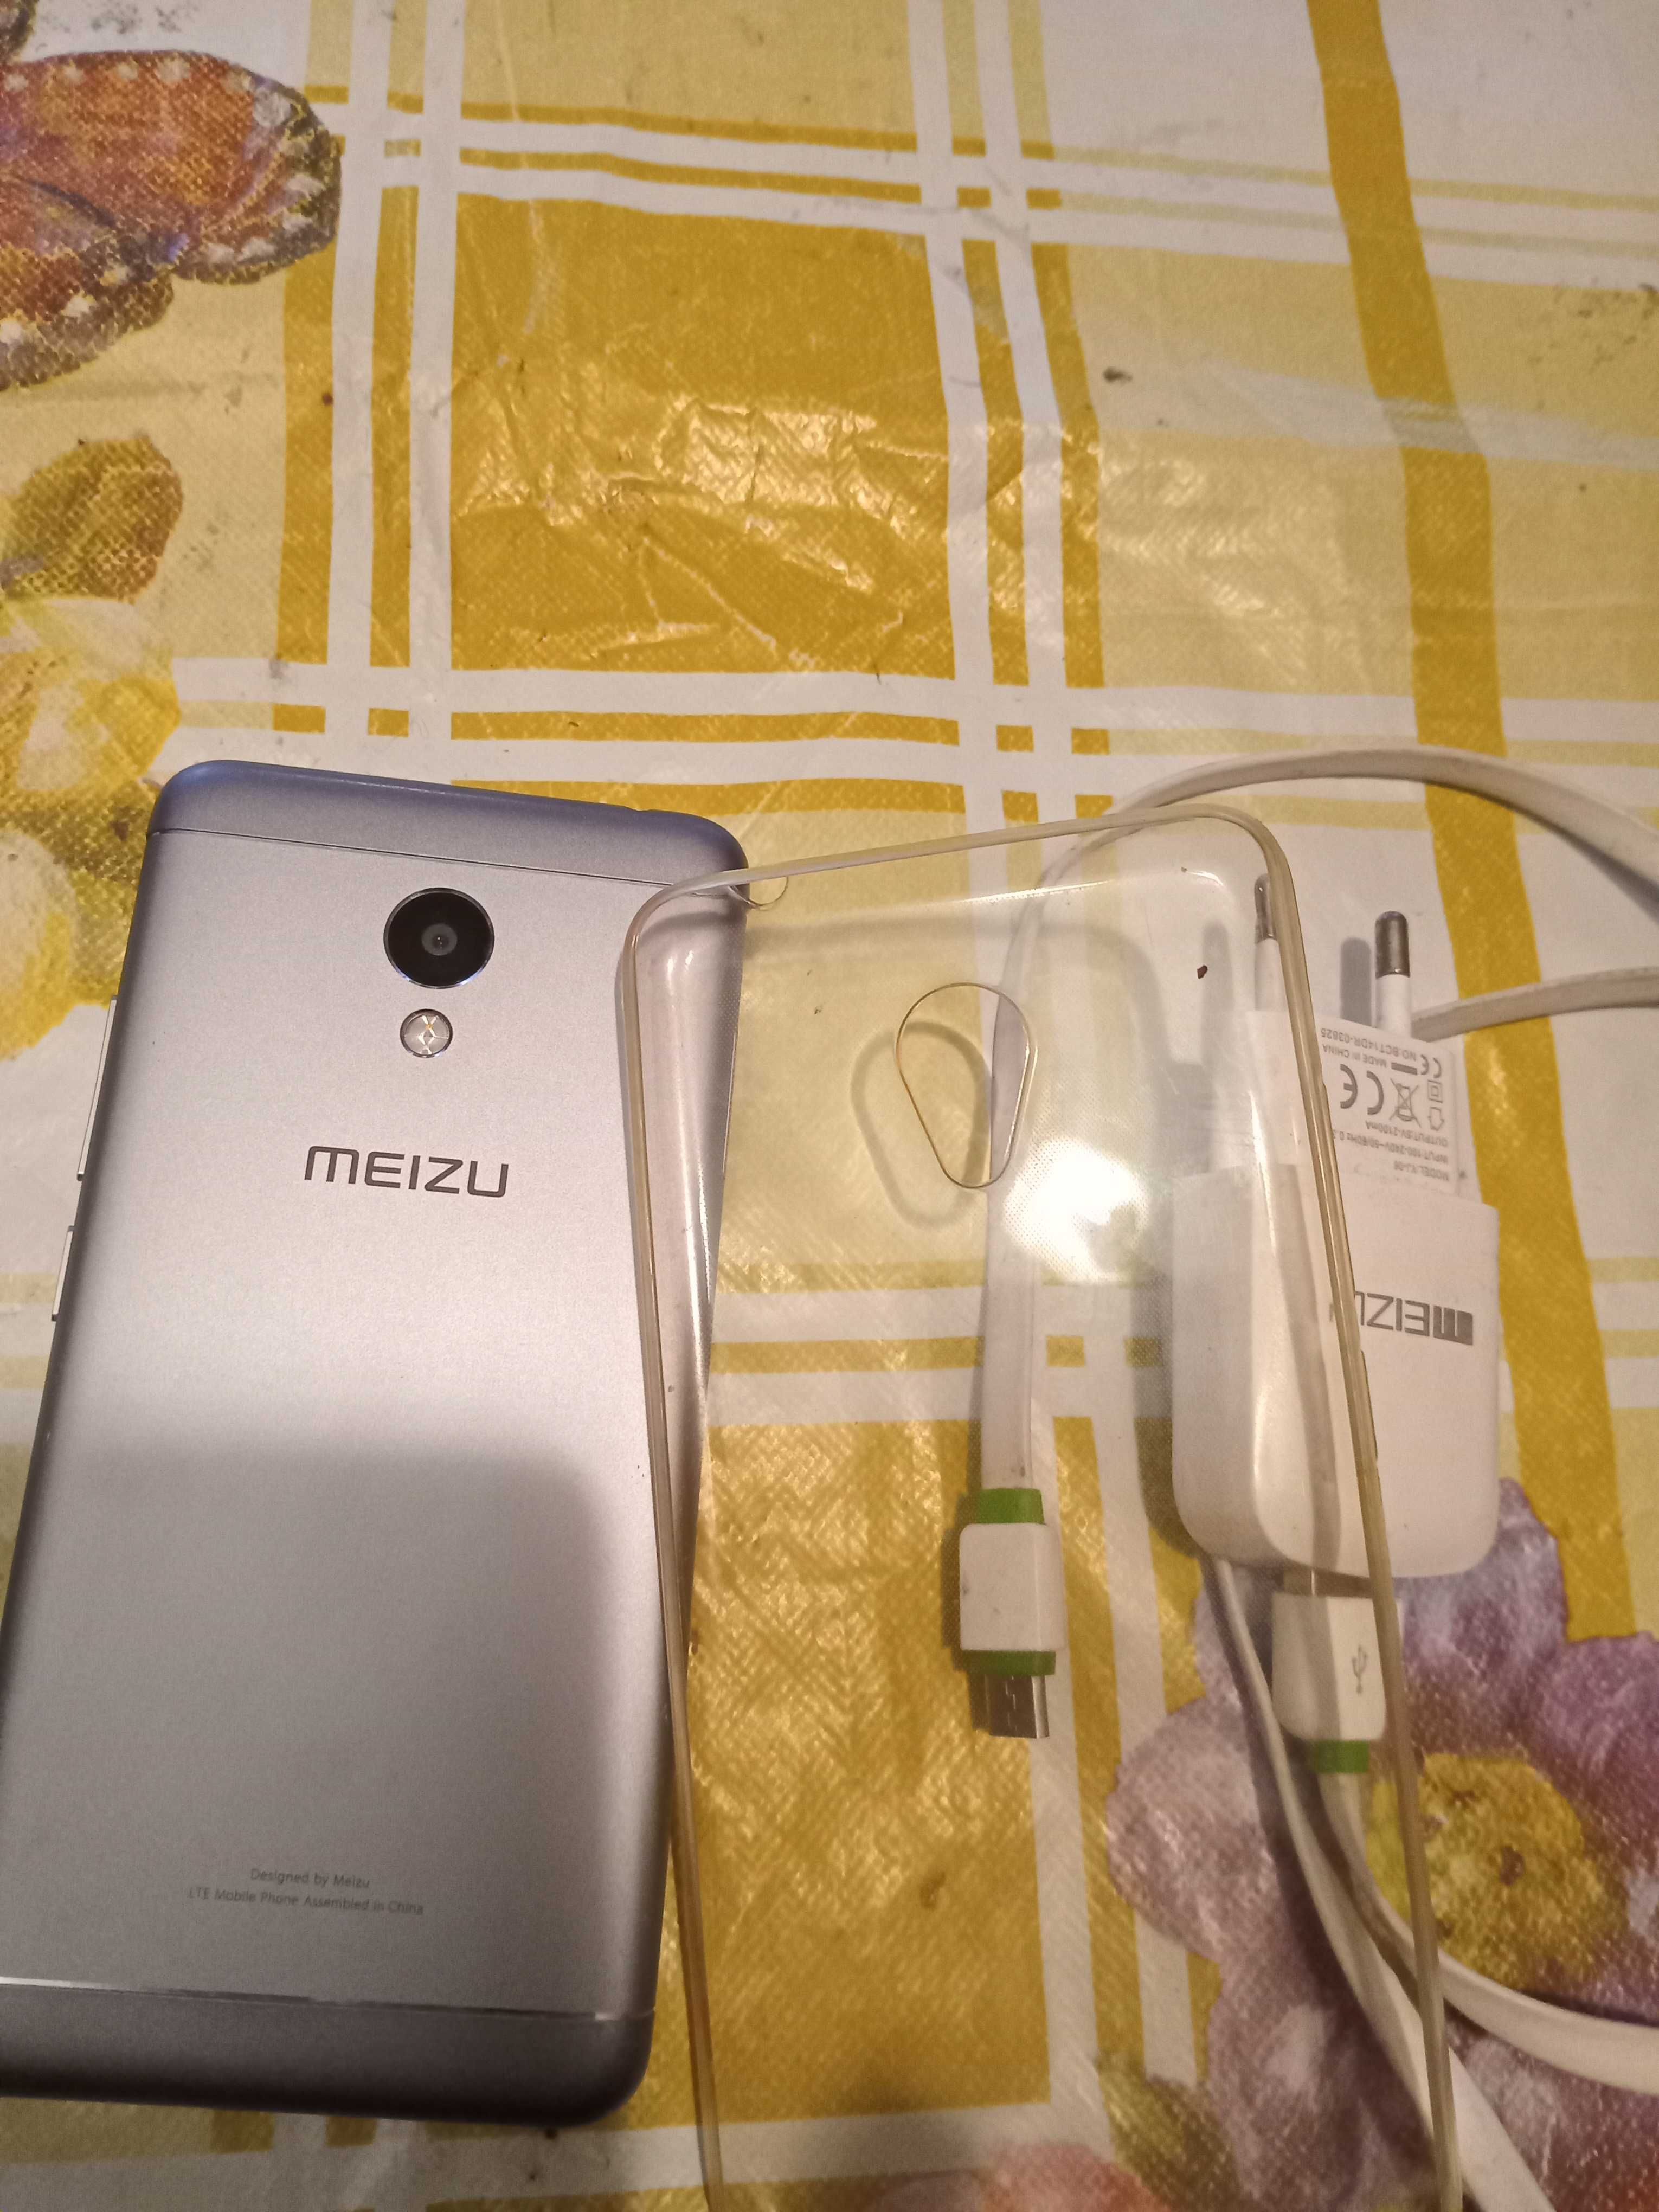 Телефон meizu б/у майже новий акамулятор новий.все працює.